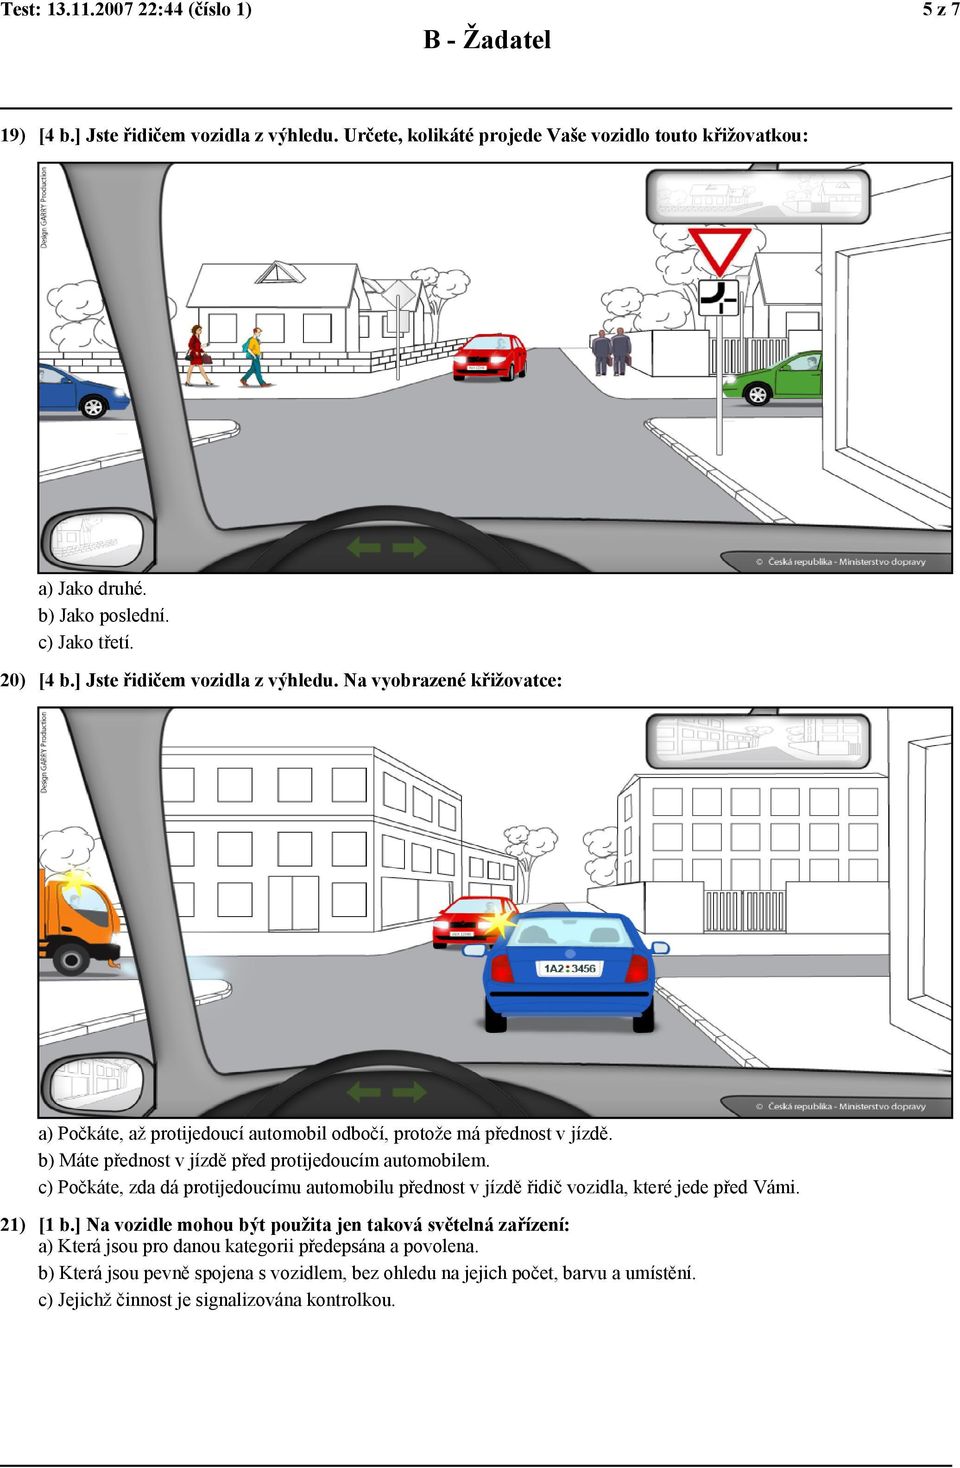 b) Máte přednost v jízdě před protijedoucím automobilem. c) Počkáte, zda dá protijedoucímu automobilu přednost v jízdě řidič vozidla, které jede před Vámi. 21) [1 b.